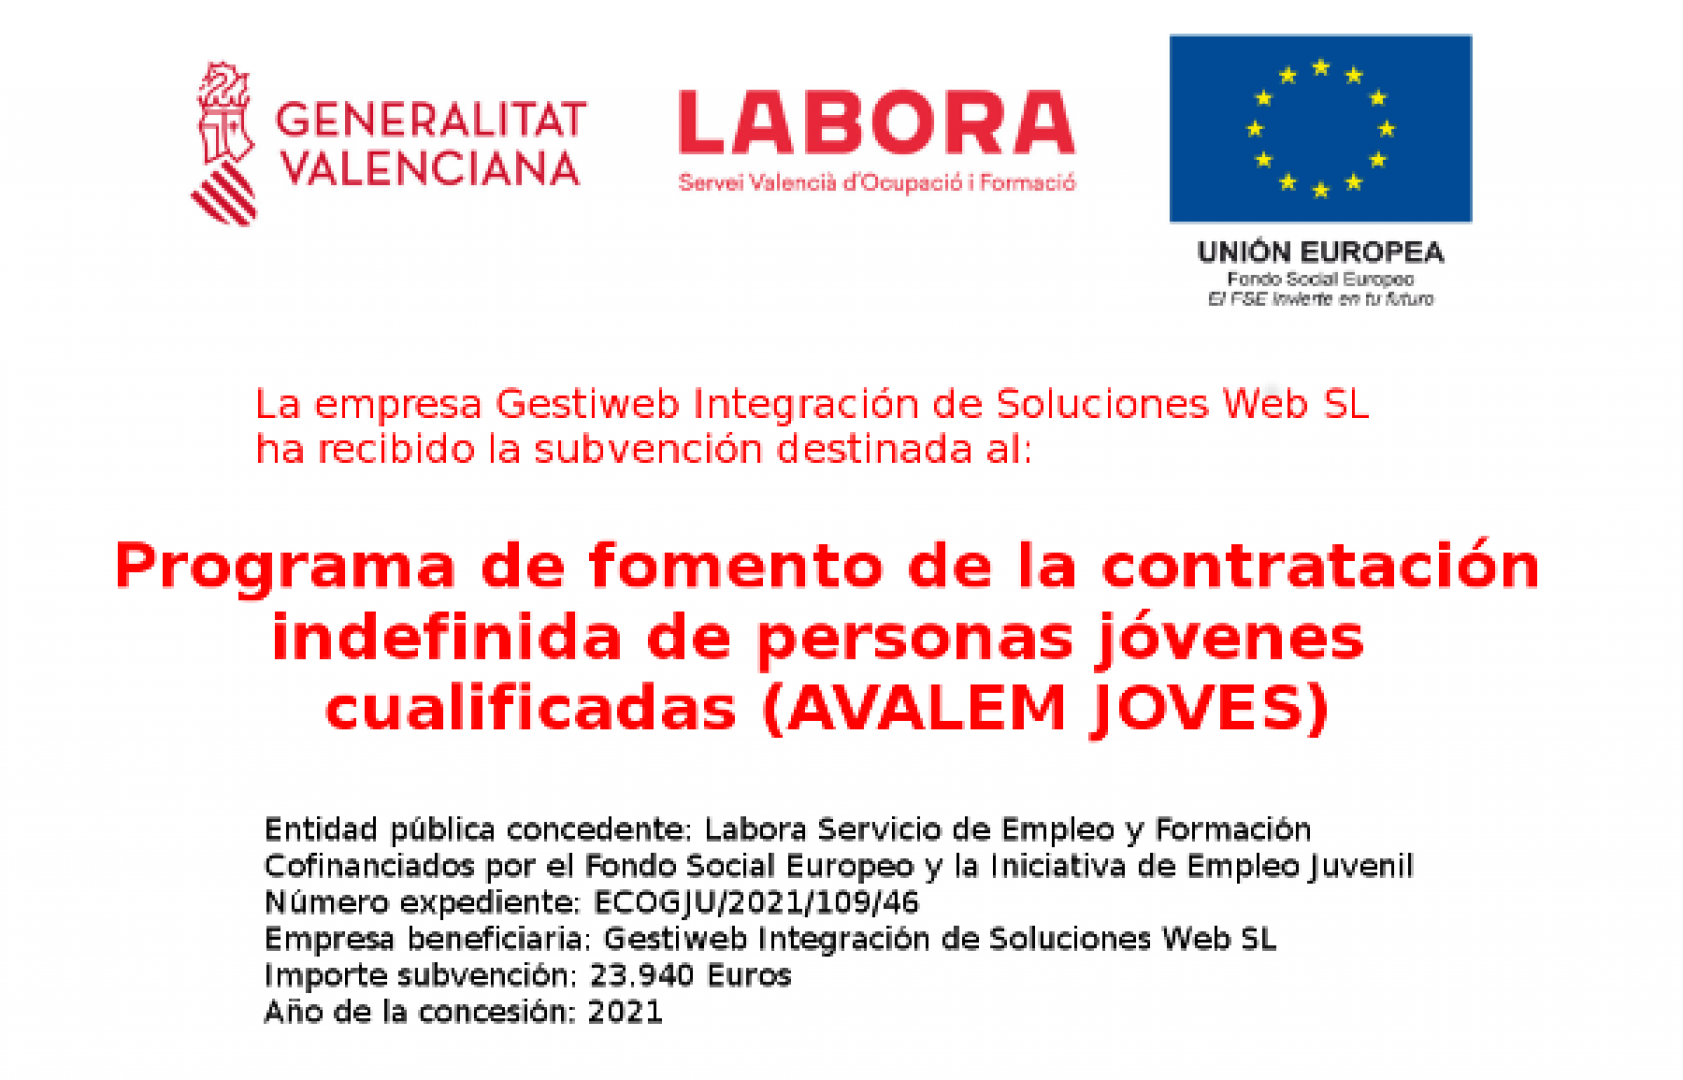 Gestiweb obtiene subvención de Labora de la Generalitat Valenciana